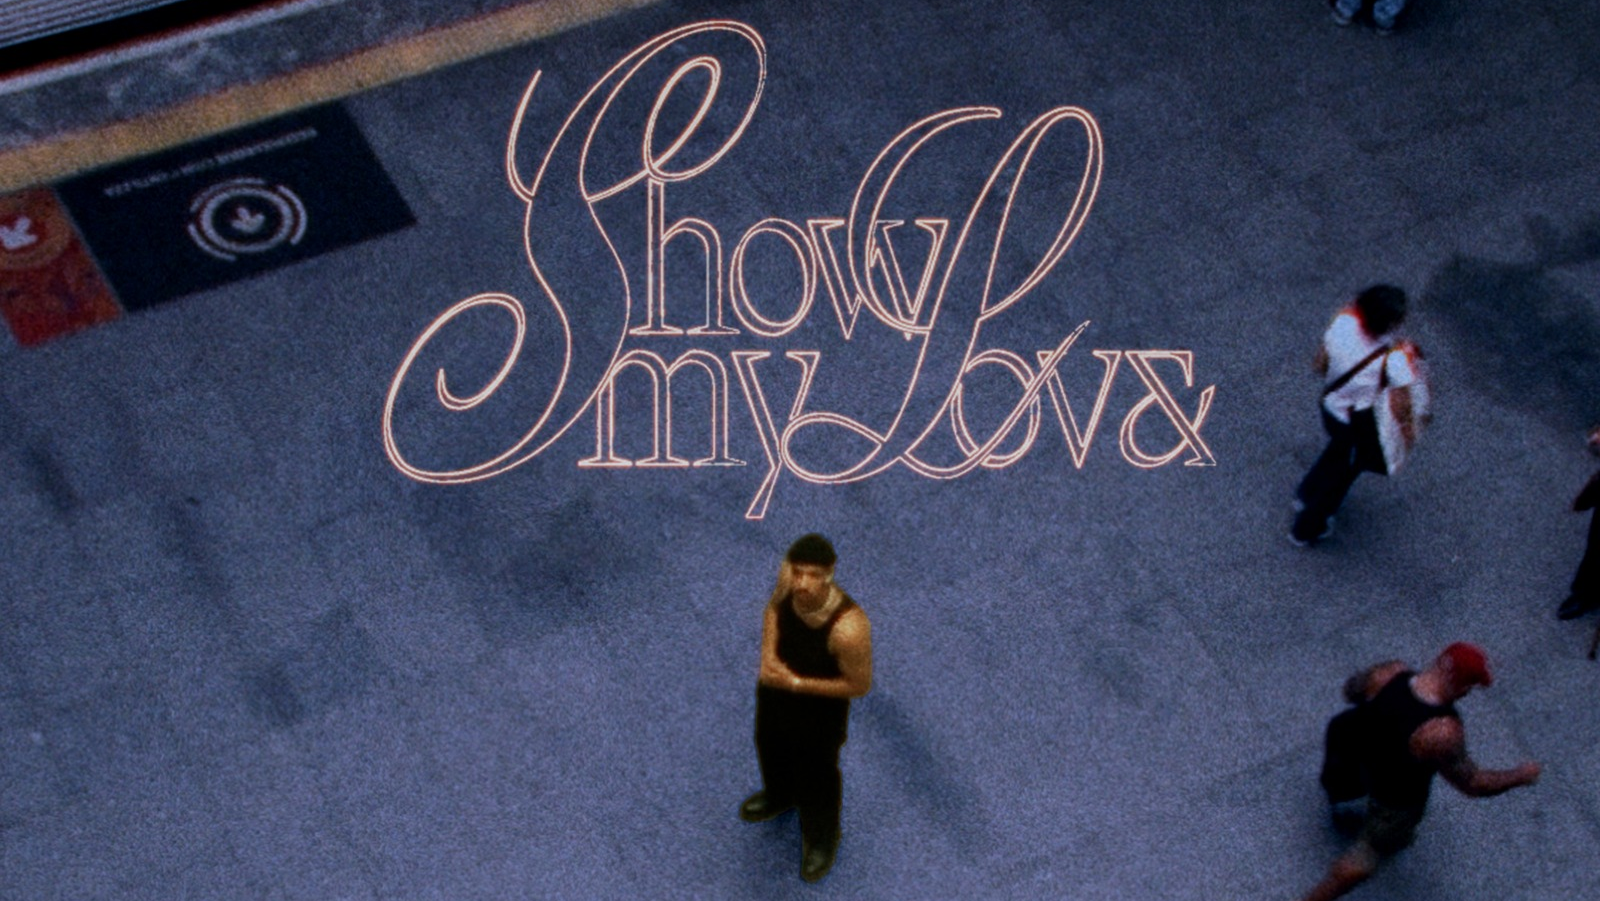 Victor Xamã reflete sobre amor e carreira no novo single “Show My Love”.